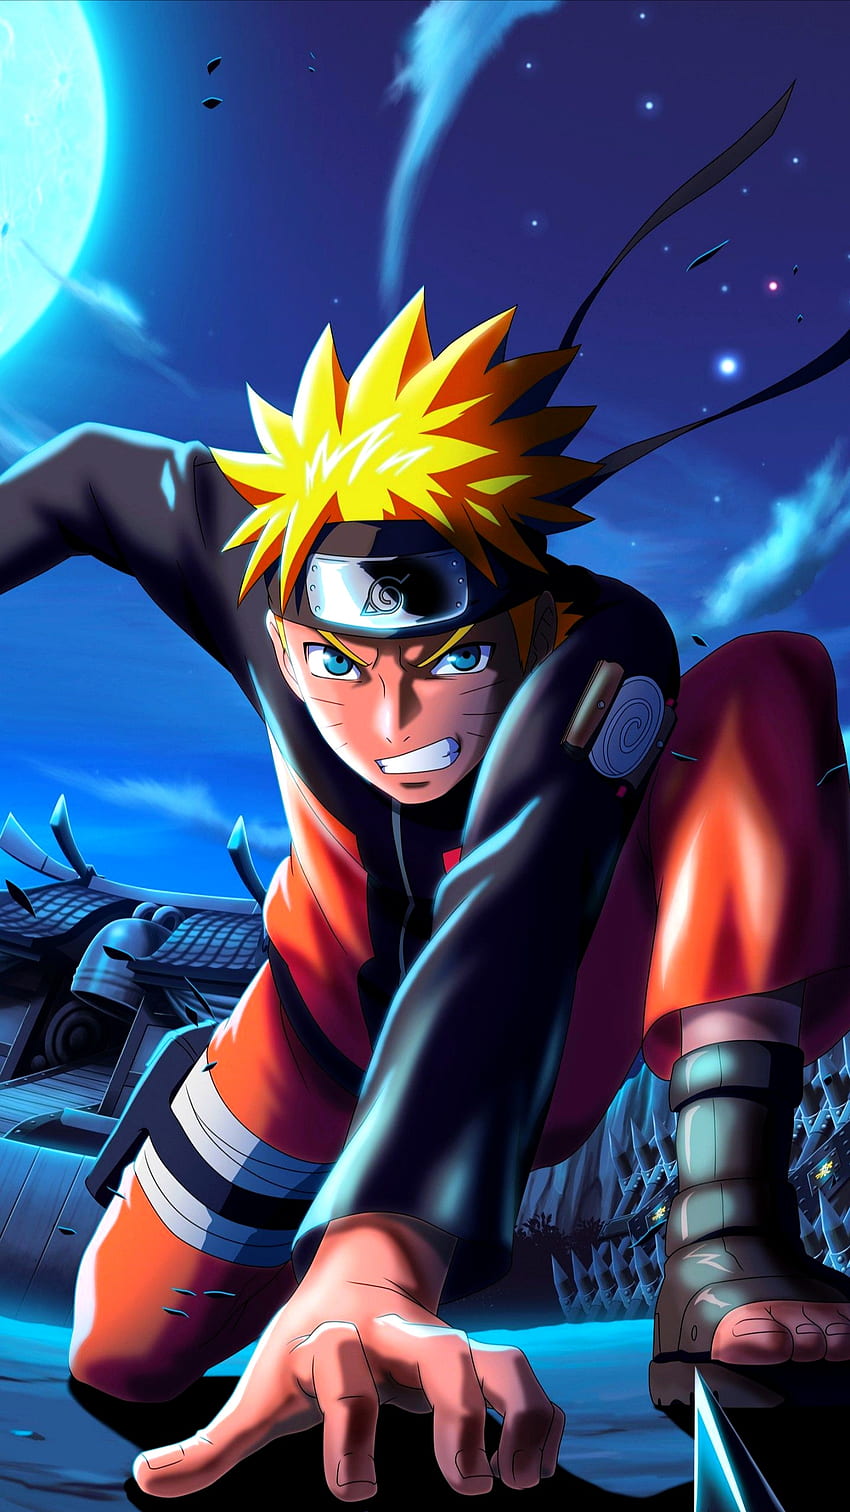 Uzumaki Naruto – người anh hùng trẻ tuổi, tinh thần kiên cường và lòng yêu thương. Hãy theo dõi hành trình của anh ta để cảm nhận được sức mạnh ý chí và lòng trung thành.